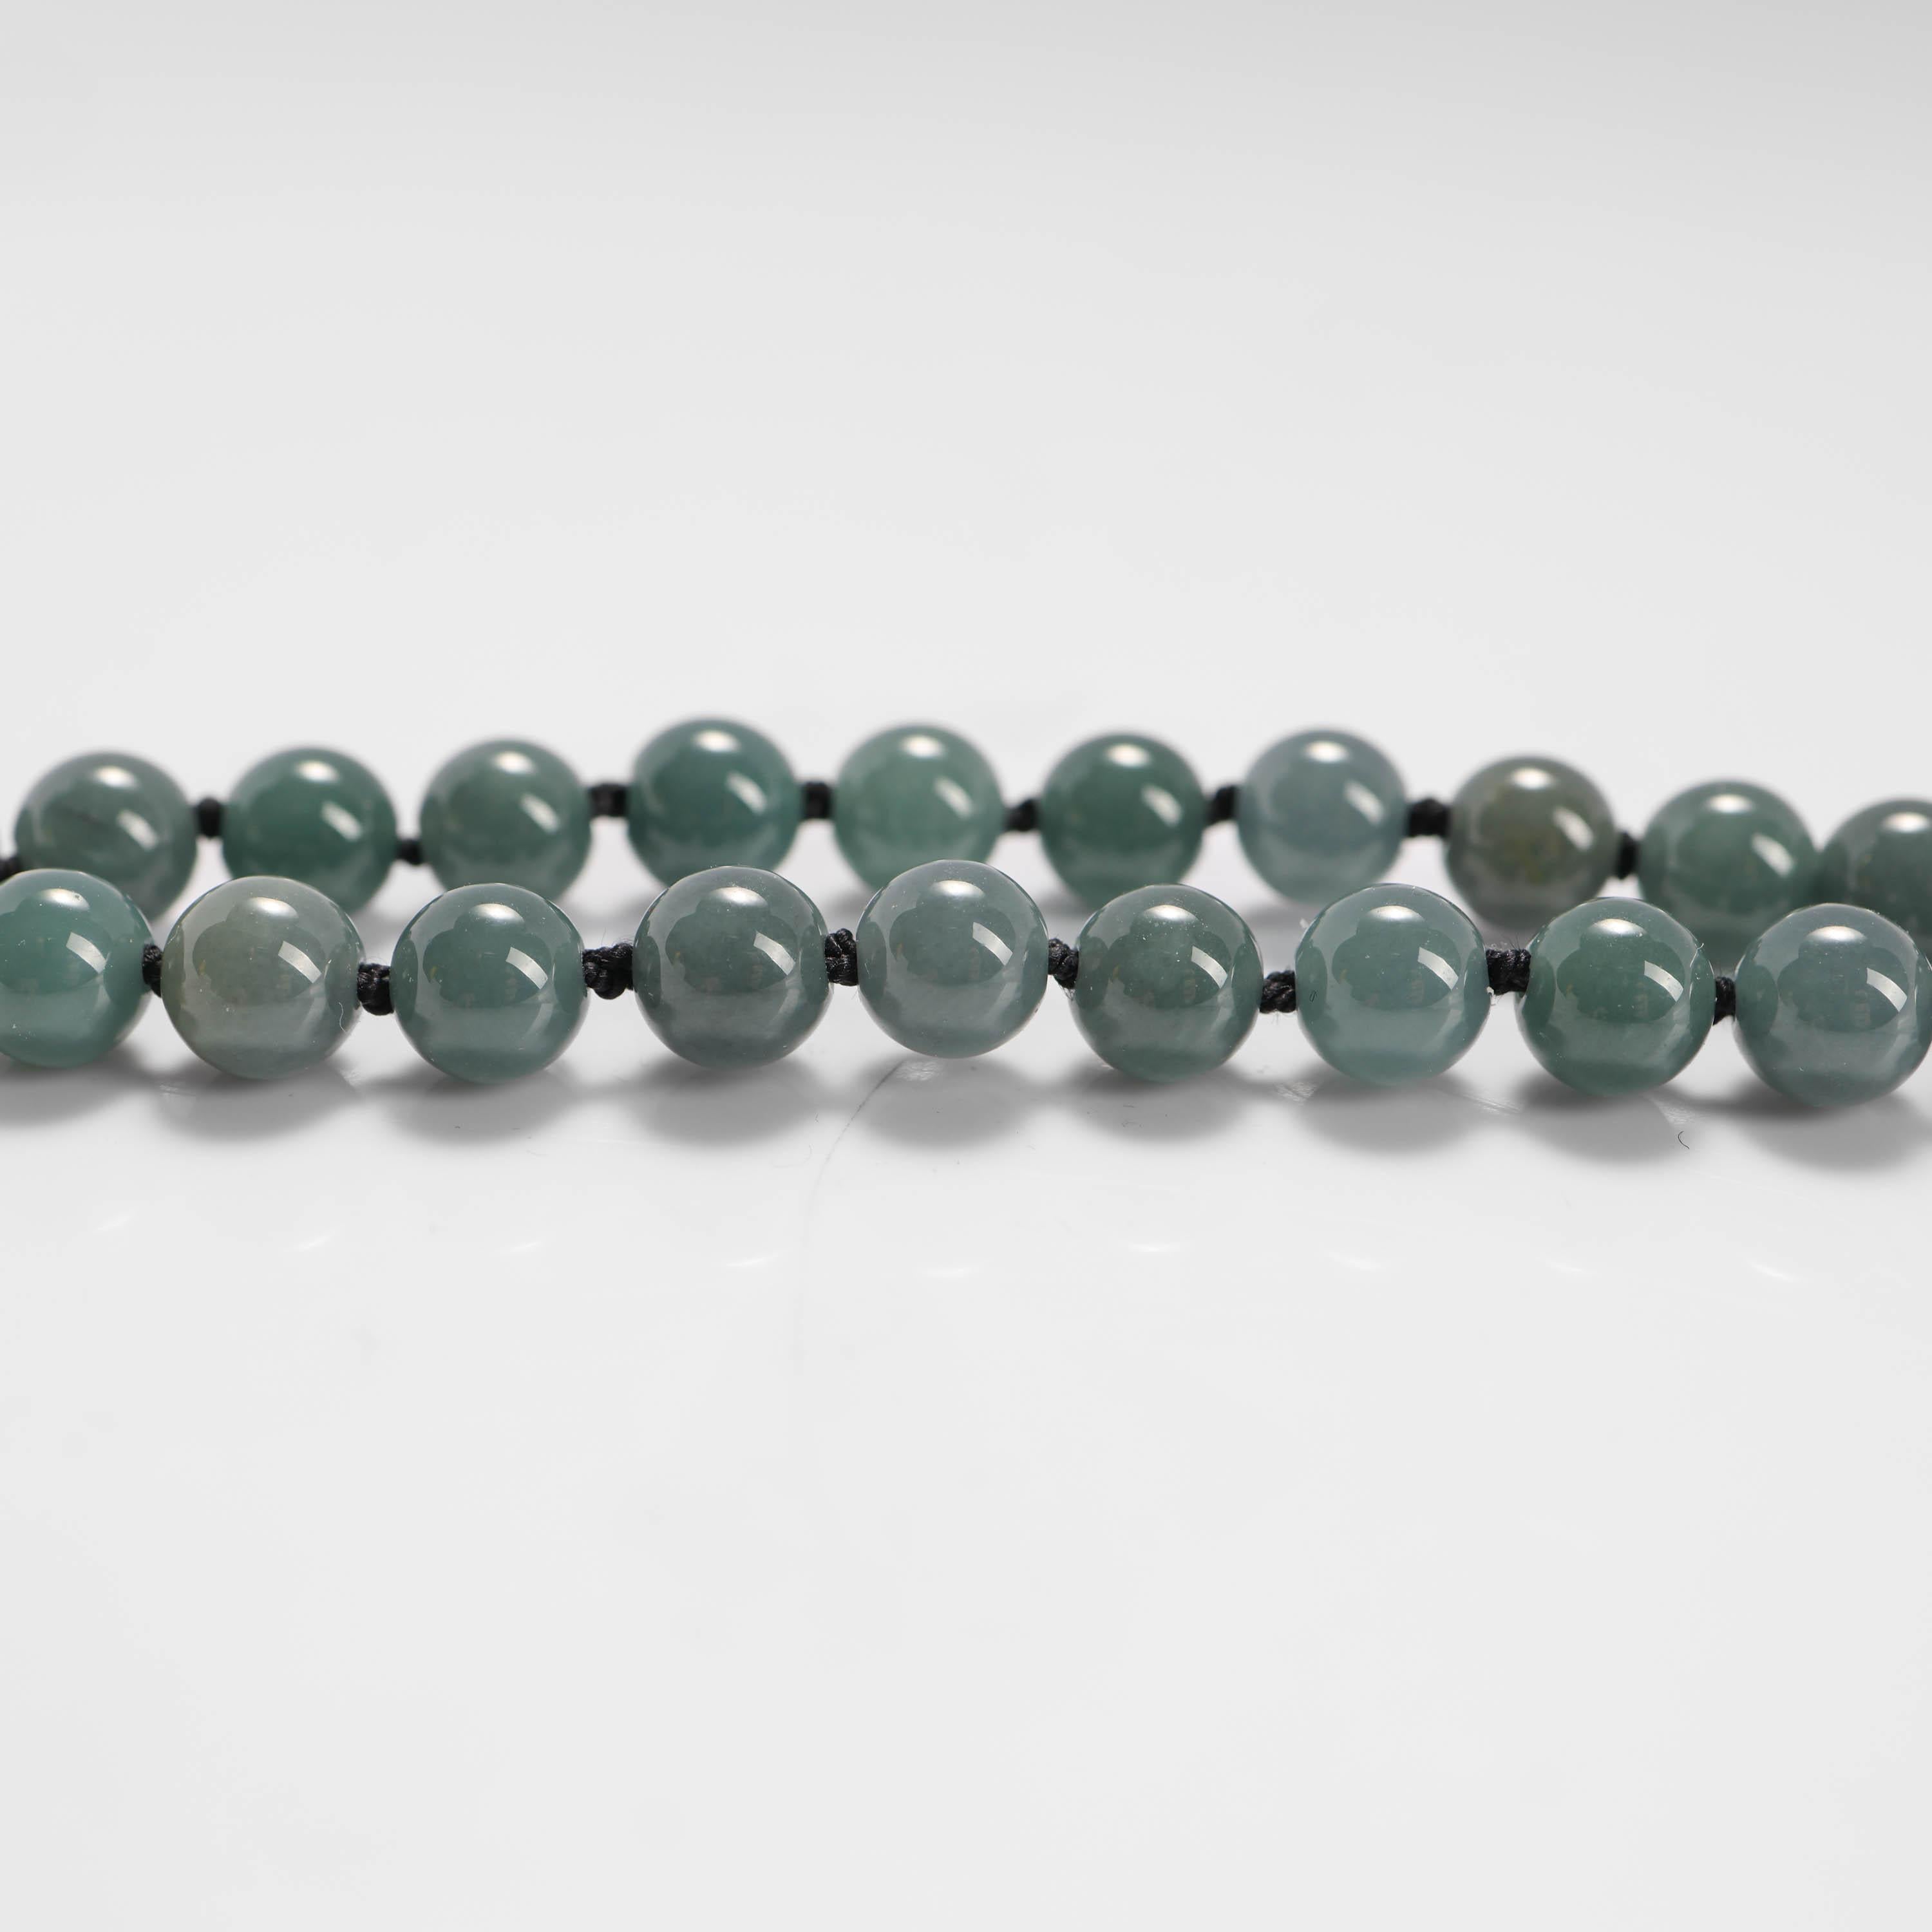 Jade-Halskette Transluzent Grün-Blau zertifiziert unbehandelt, neu, 25